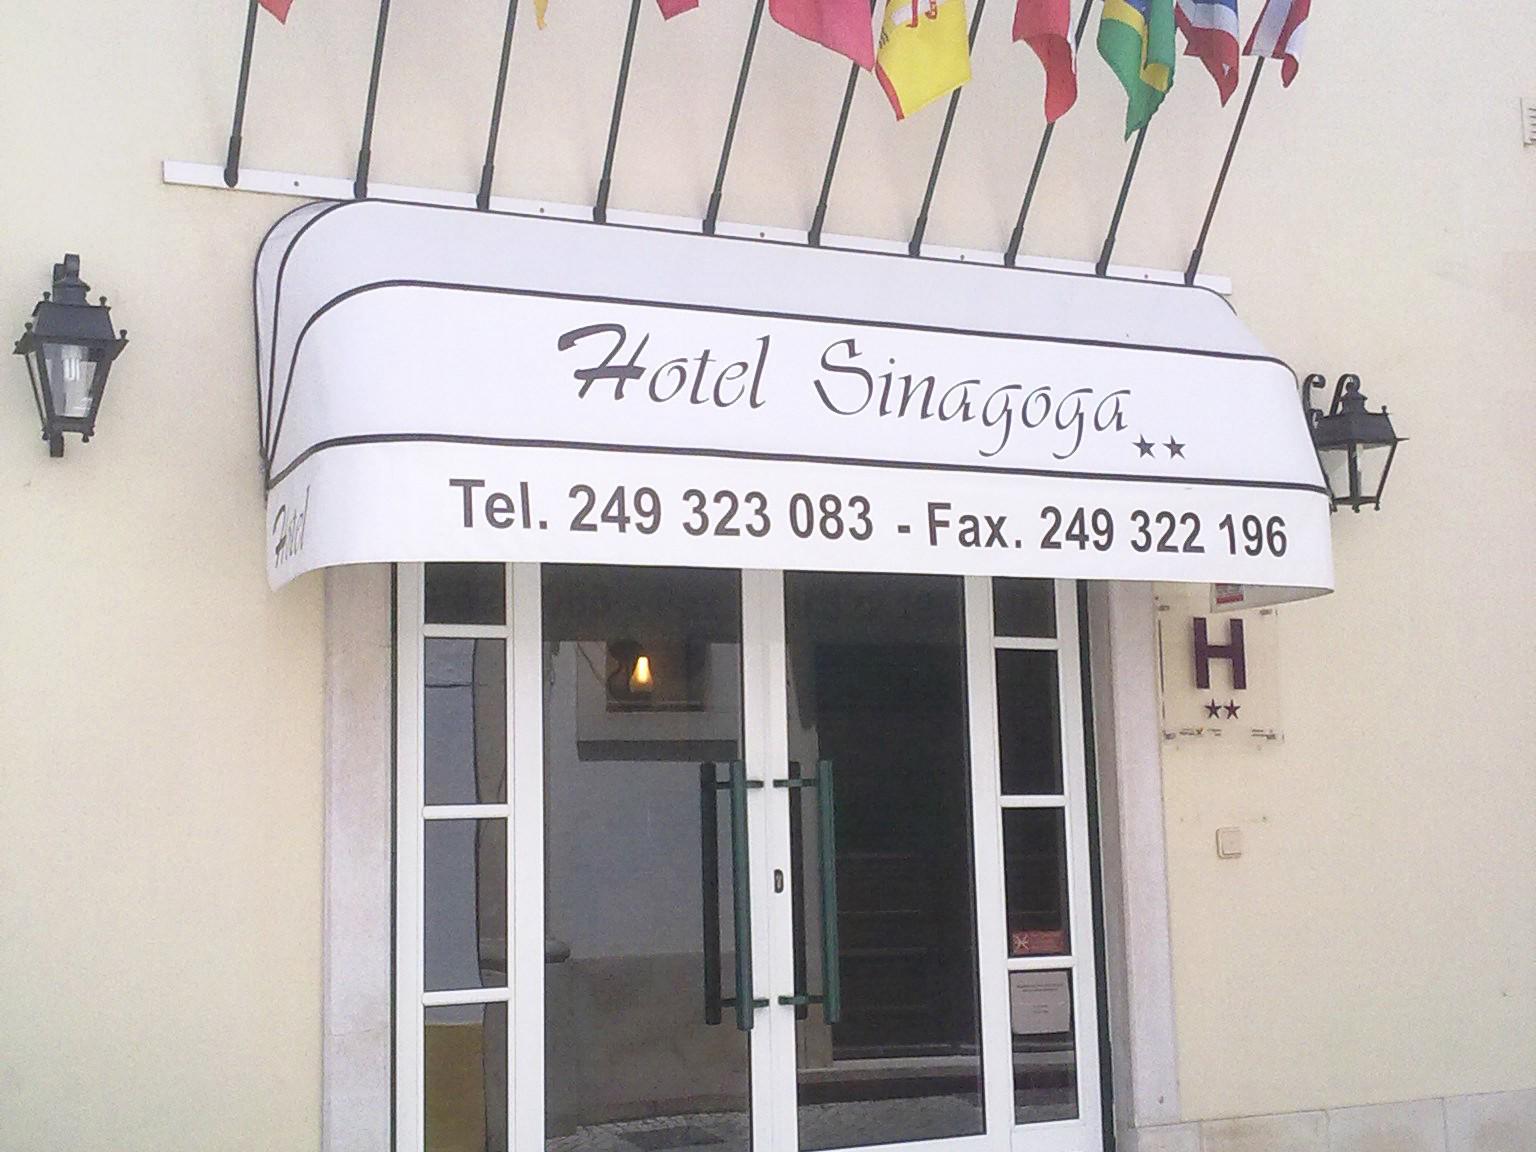 Fachada - Hotel Sinagoga oferece um excelente serviço para uma rápida estadia ou para umas ferias mais prolongadas com acesso Wi-Fi gratuito.